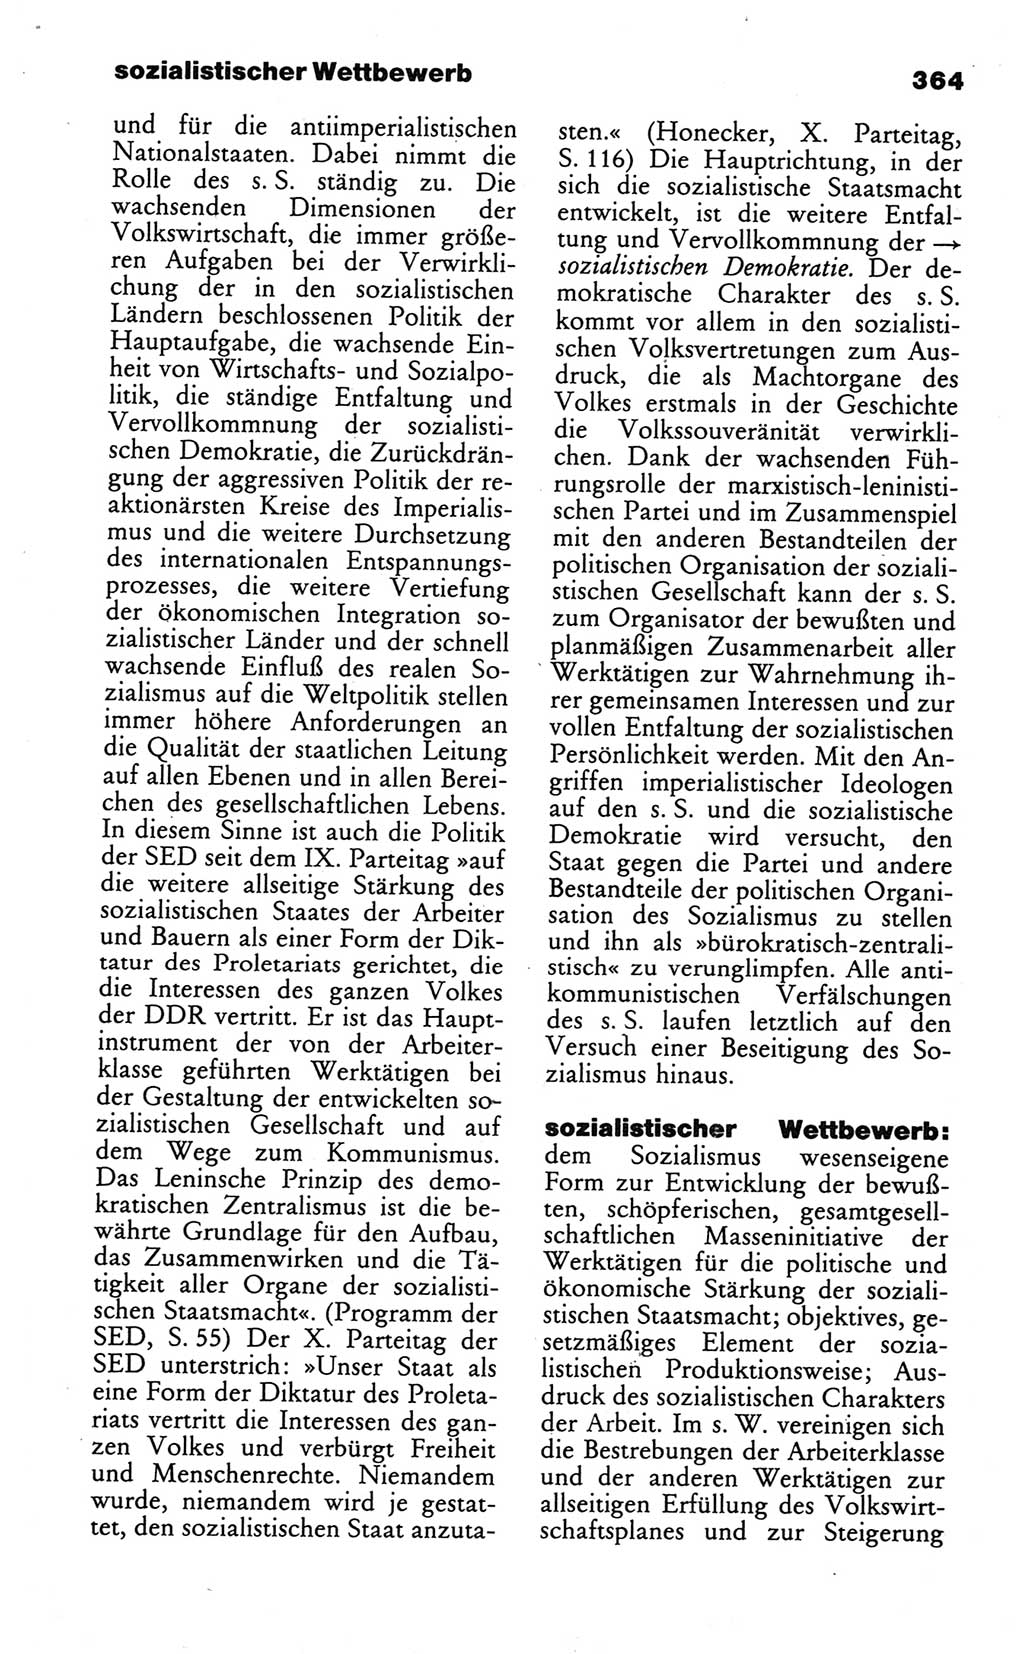 Wörterbuch des wissenschaftlichen Kommunismus [Deutsche Demokratische Republik (DDR)] 1984, Seite 364 (Wb. wiss. Komm. DDR 1984, S. 364)